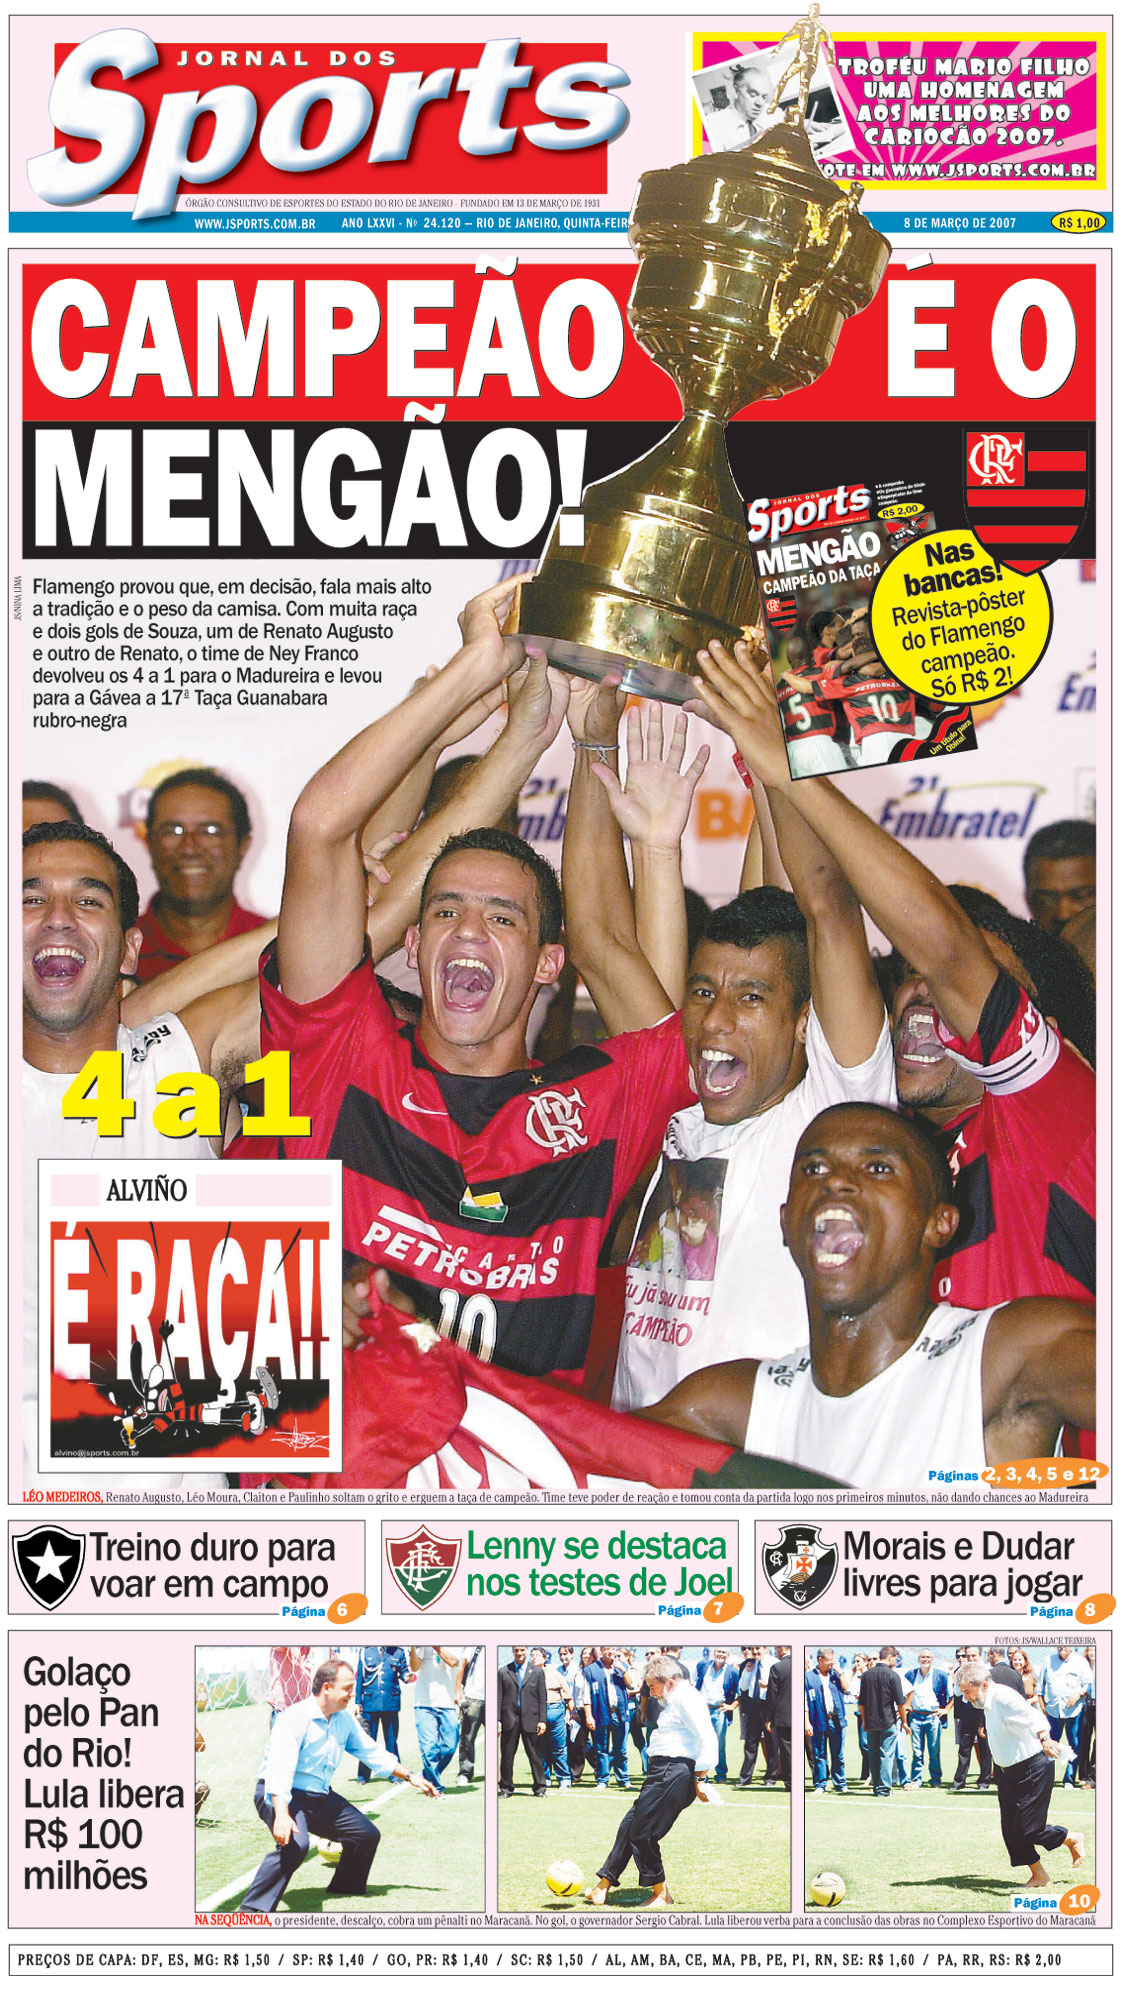 Jornal dos Sports (Flamengo Campeão da Taça Guanabara de 2007)